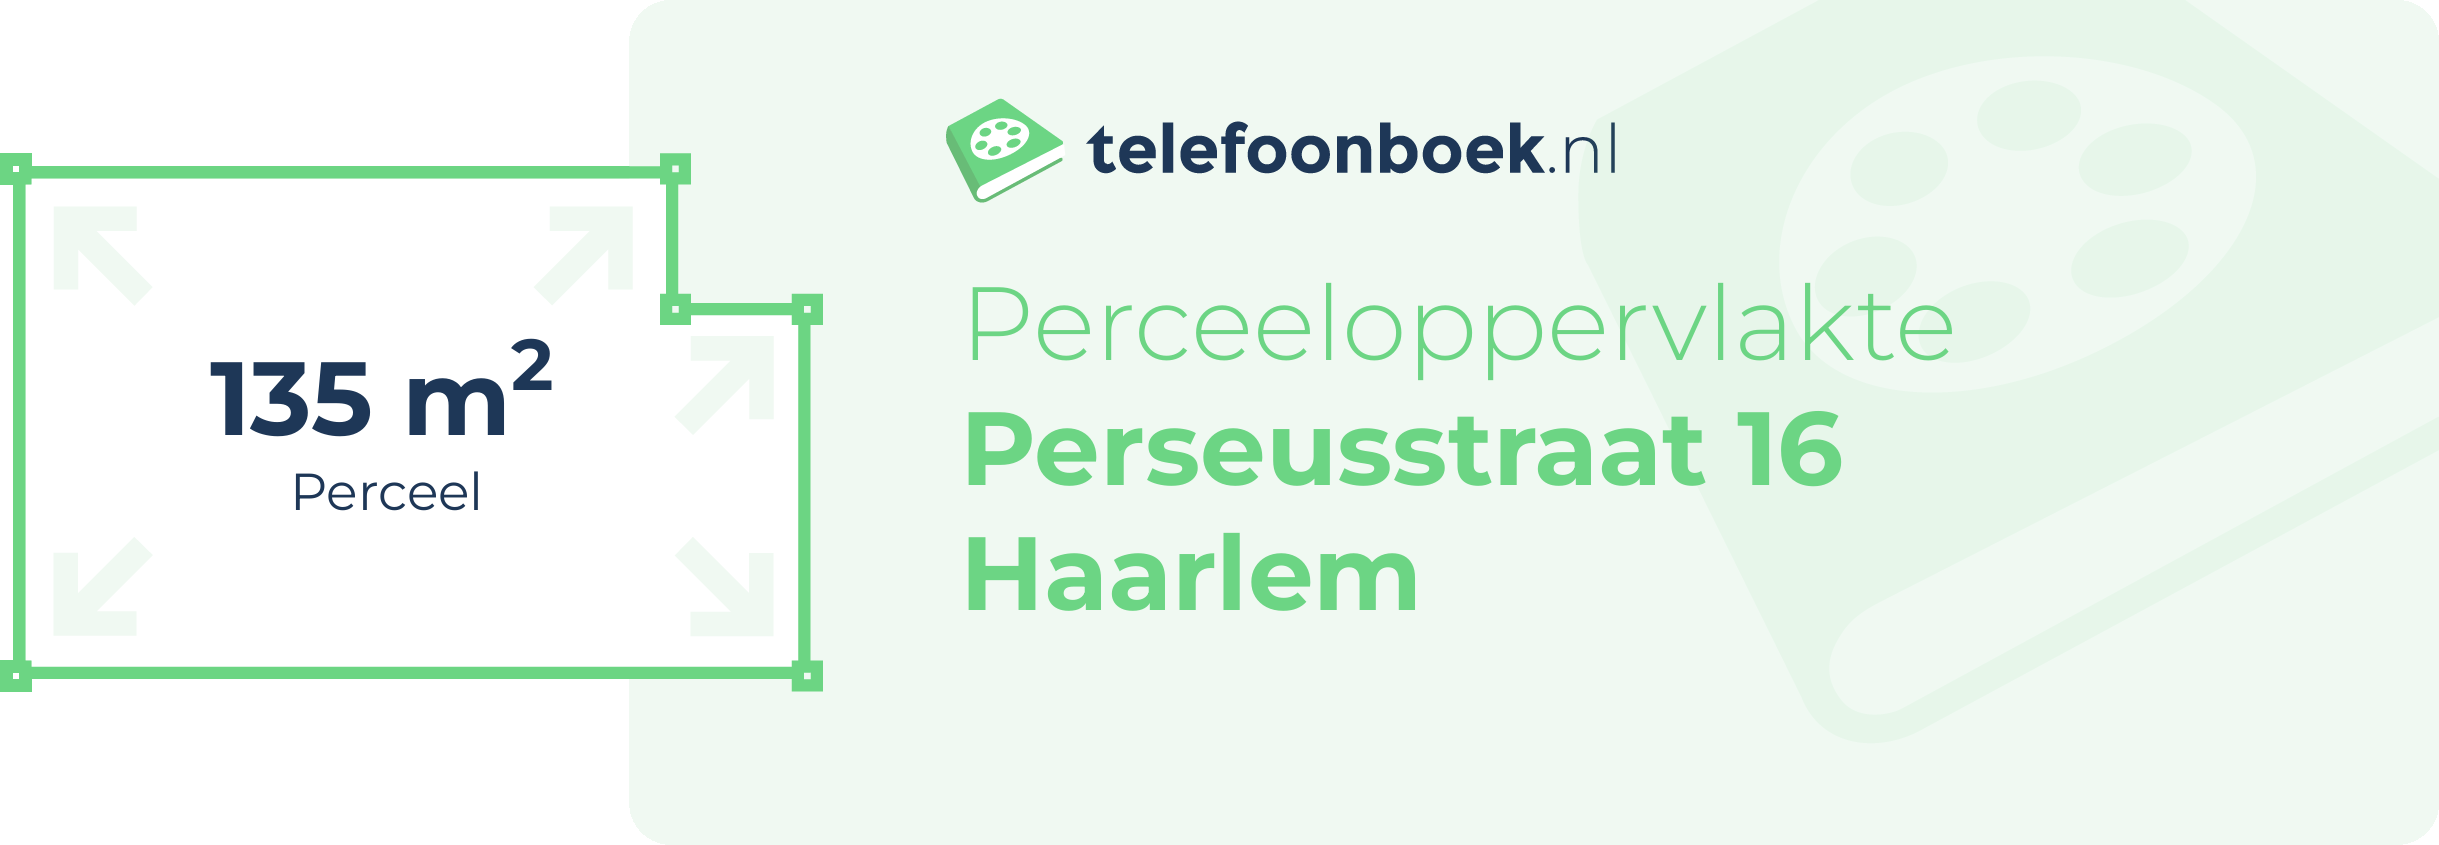 Perceeloppervlakte Perseusstraat 16 Haarlem